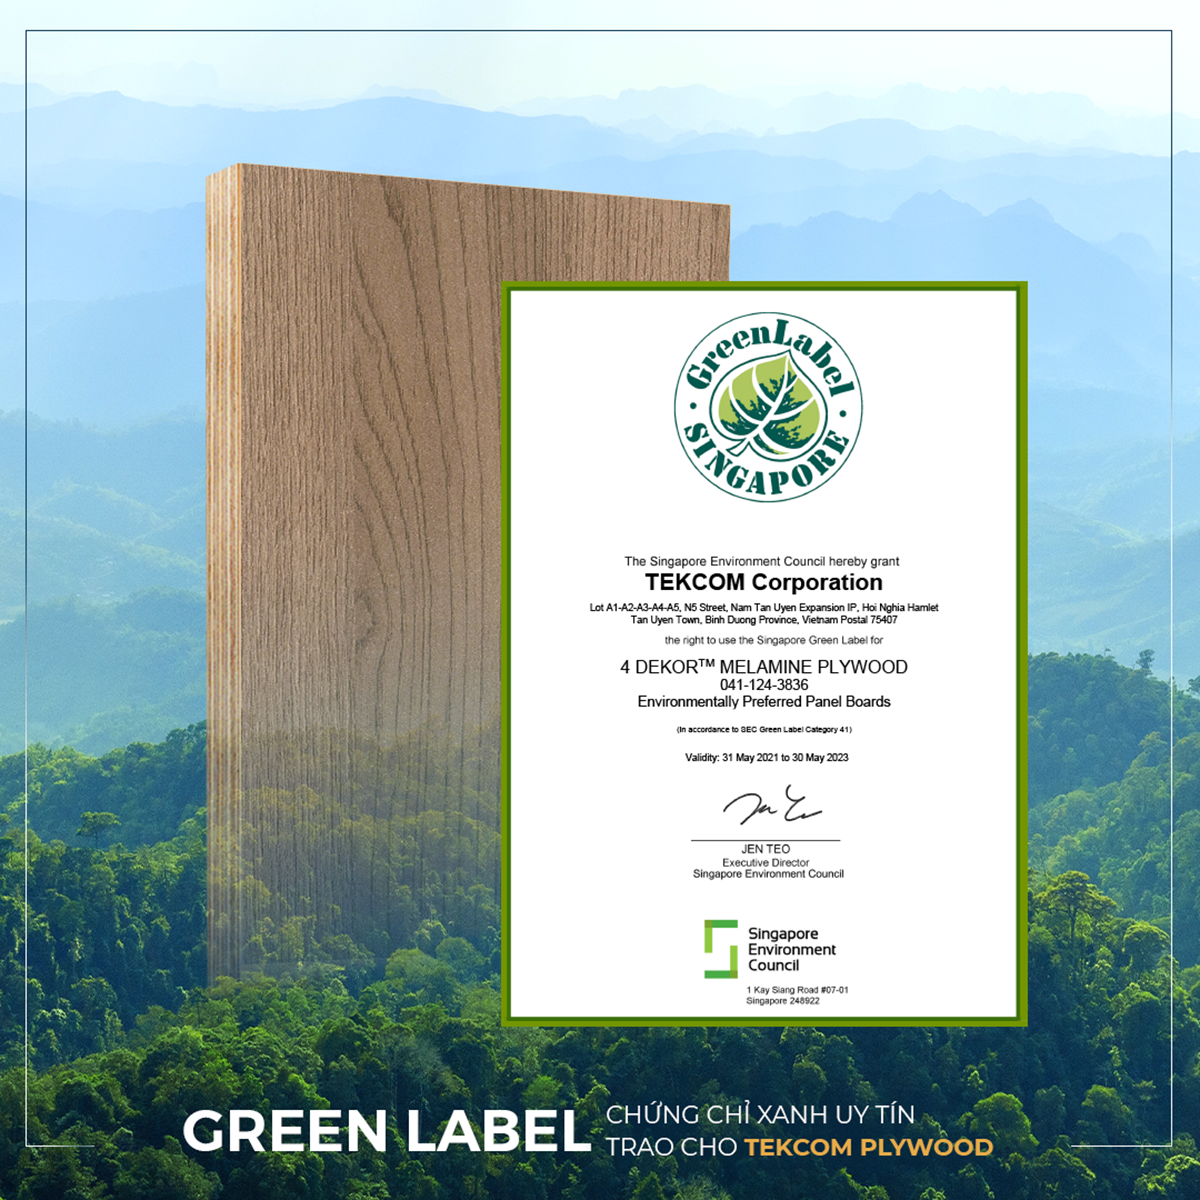 Chứng nhận Green Label Singapore được trao cho dòng ván ép 4DEKOR™ Melamine Plywood thuộc về Công ty TEKCOM Việt Nam